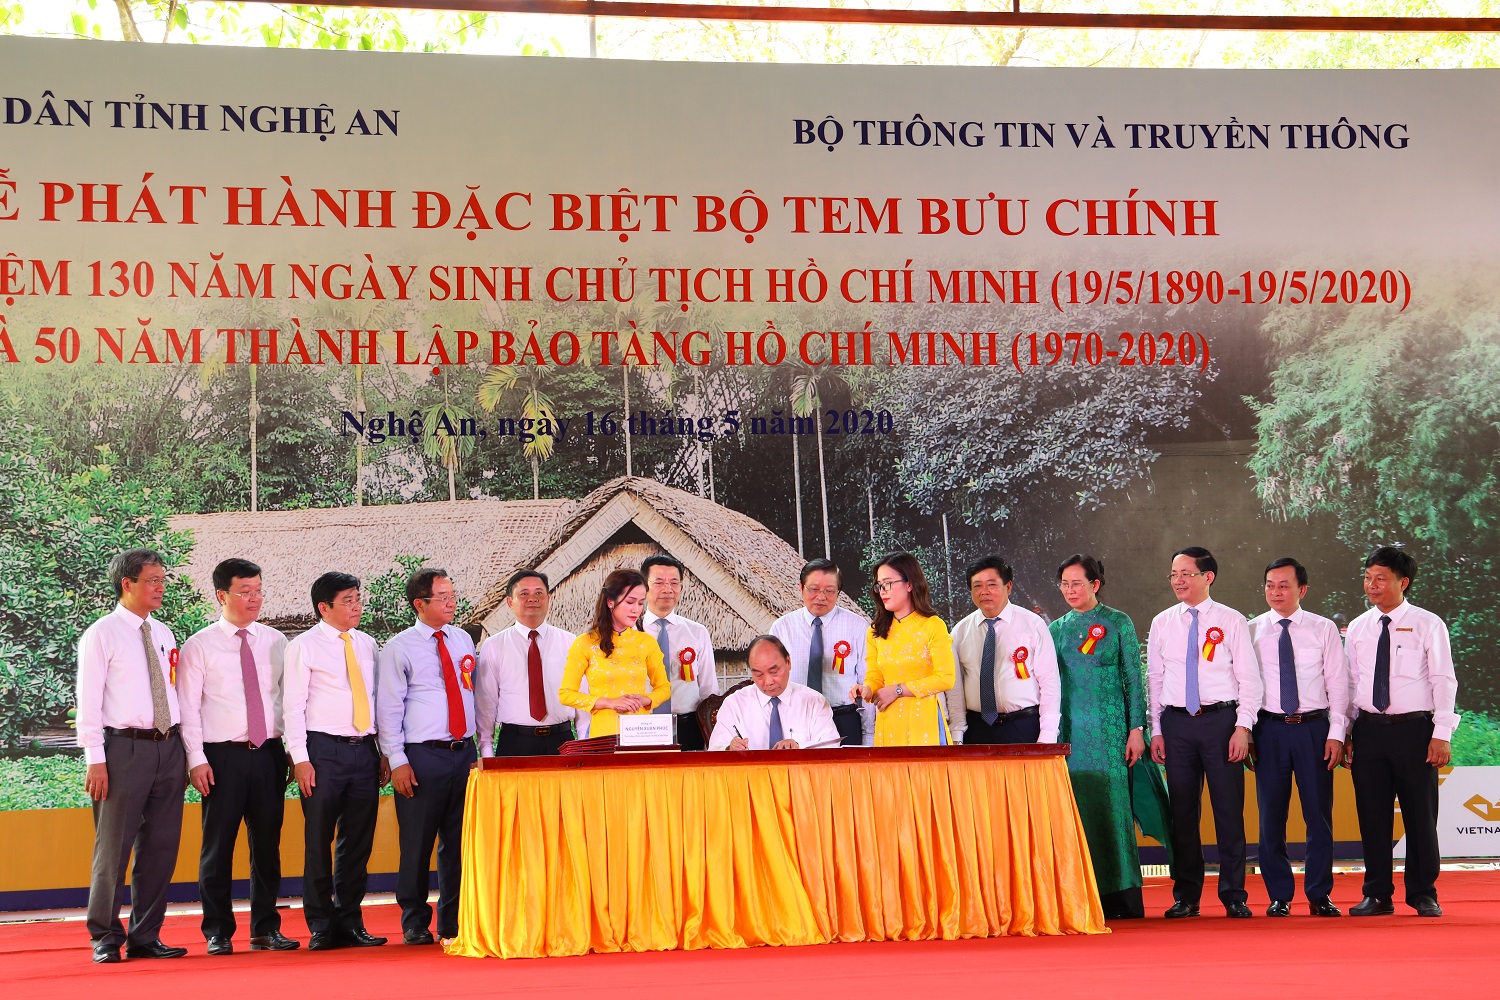 hủ tướng Nguyễn Xuân Phúc đã ký phát hành đặc biệt bộ tem Kỷ niệm 130 năm ngày sinh Chủ tịch Hồ Chí Minh (19/5/1890-19/5/2020) và 50 năm thành lập Bảo tàng Hồ Chí Minh (1970-2020)